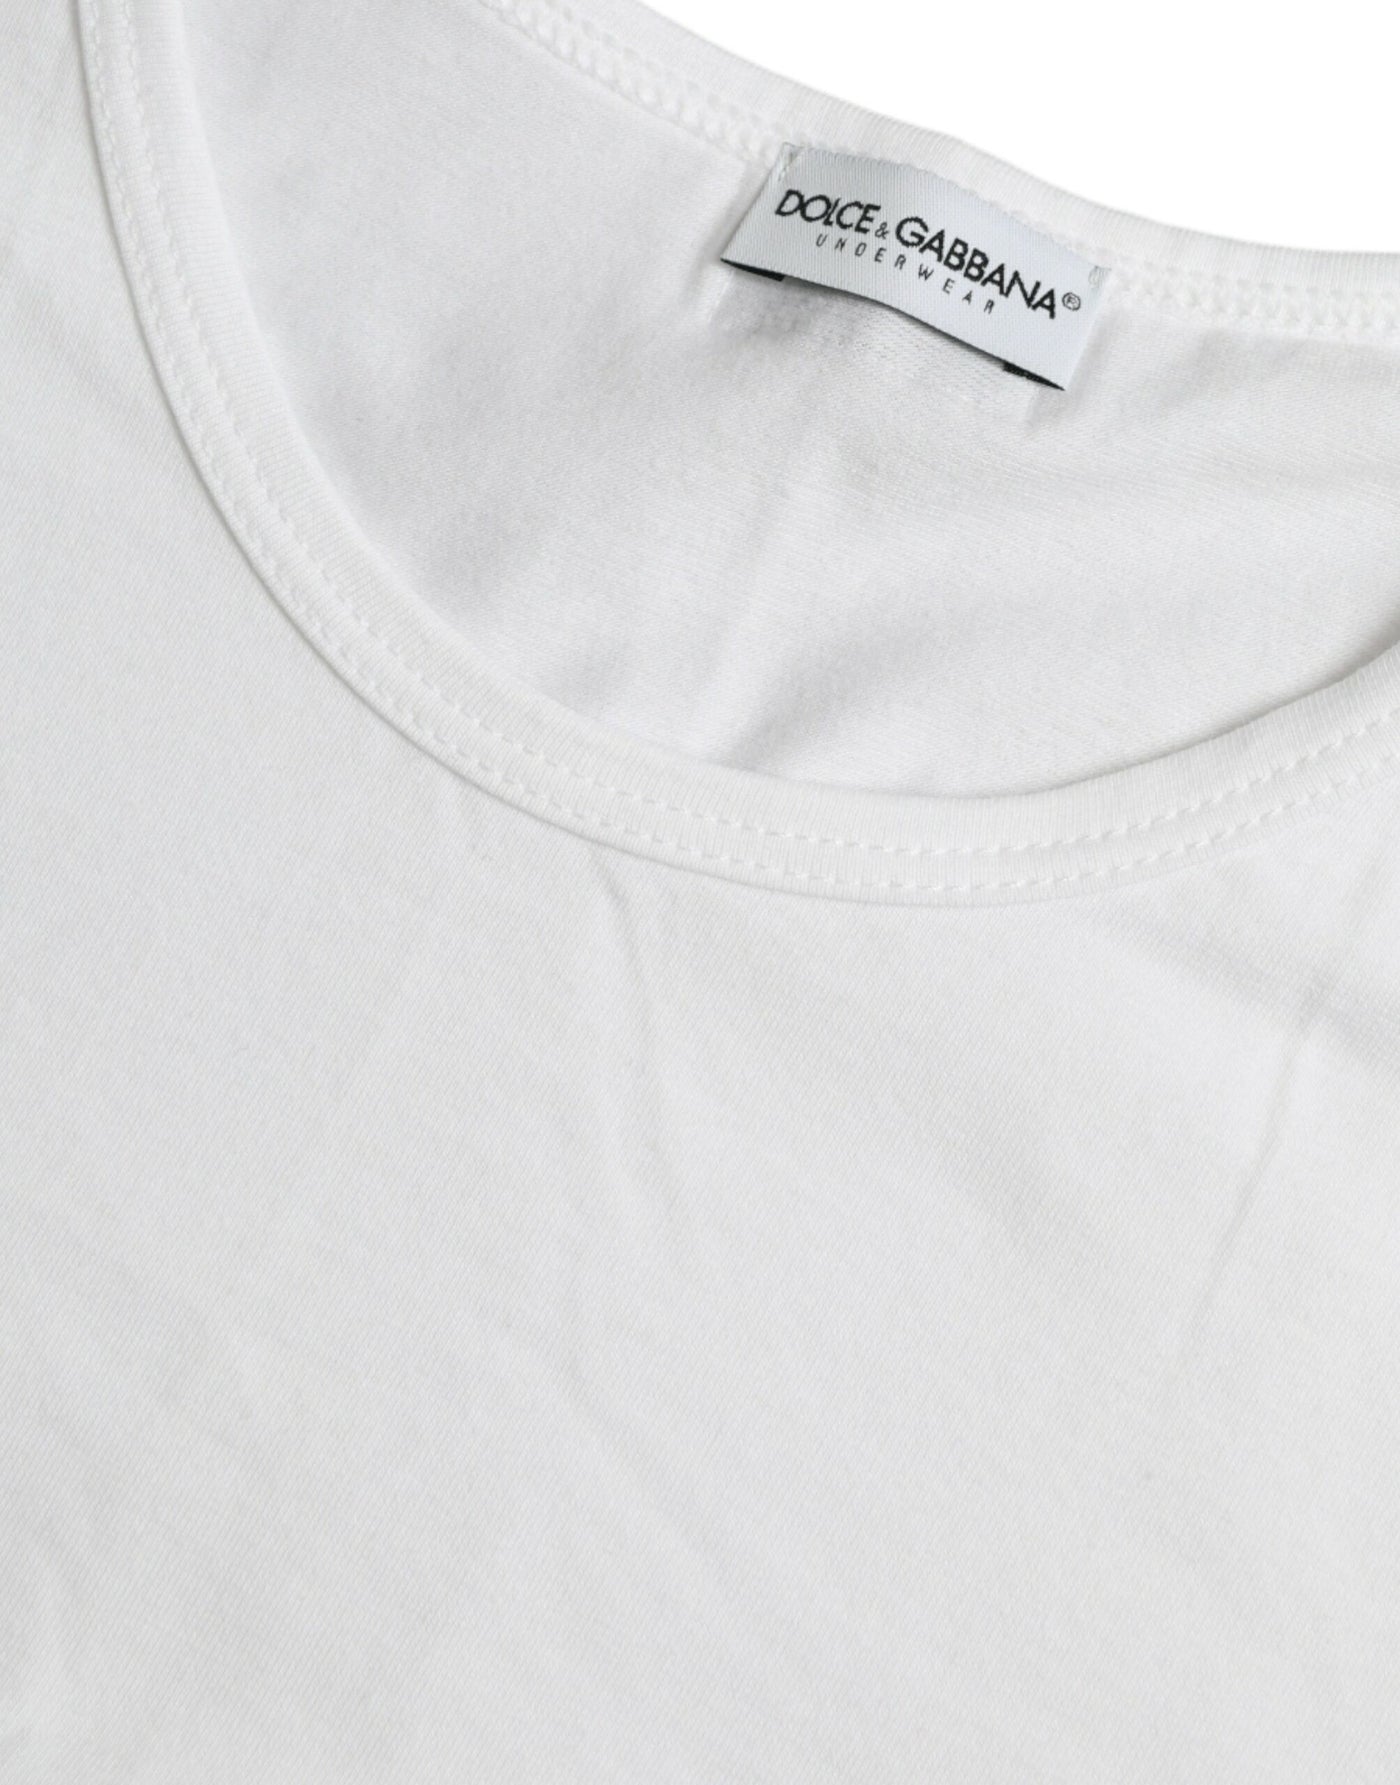 White Cotton Round Neck Crewneck Underwear T-shirt